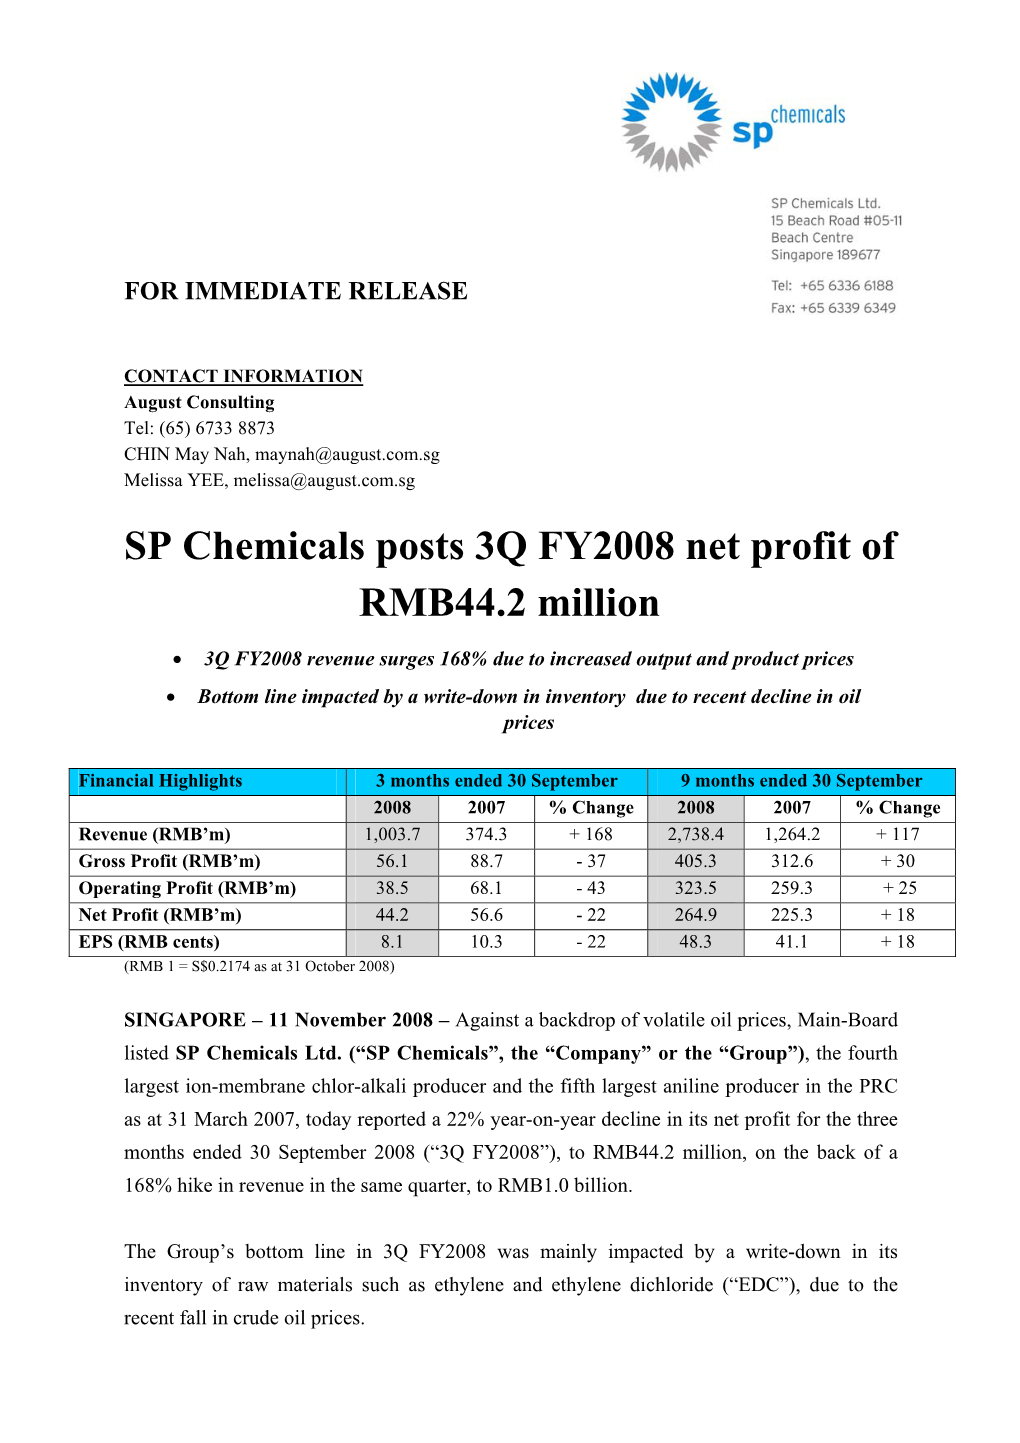 SP Chemicals Posts 3Q FY2008 Net Profit of RMB44.2 Million